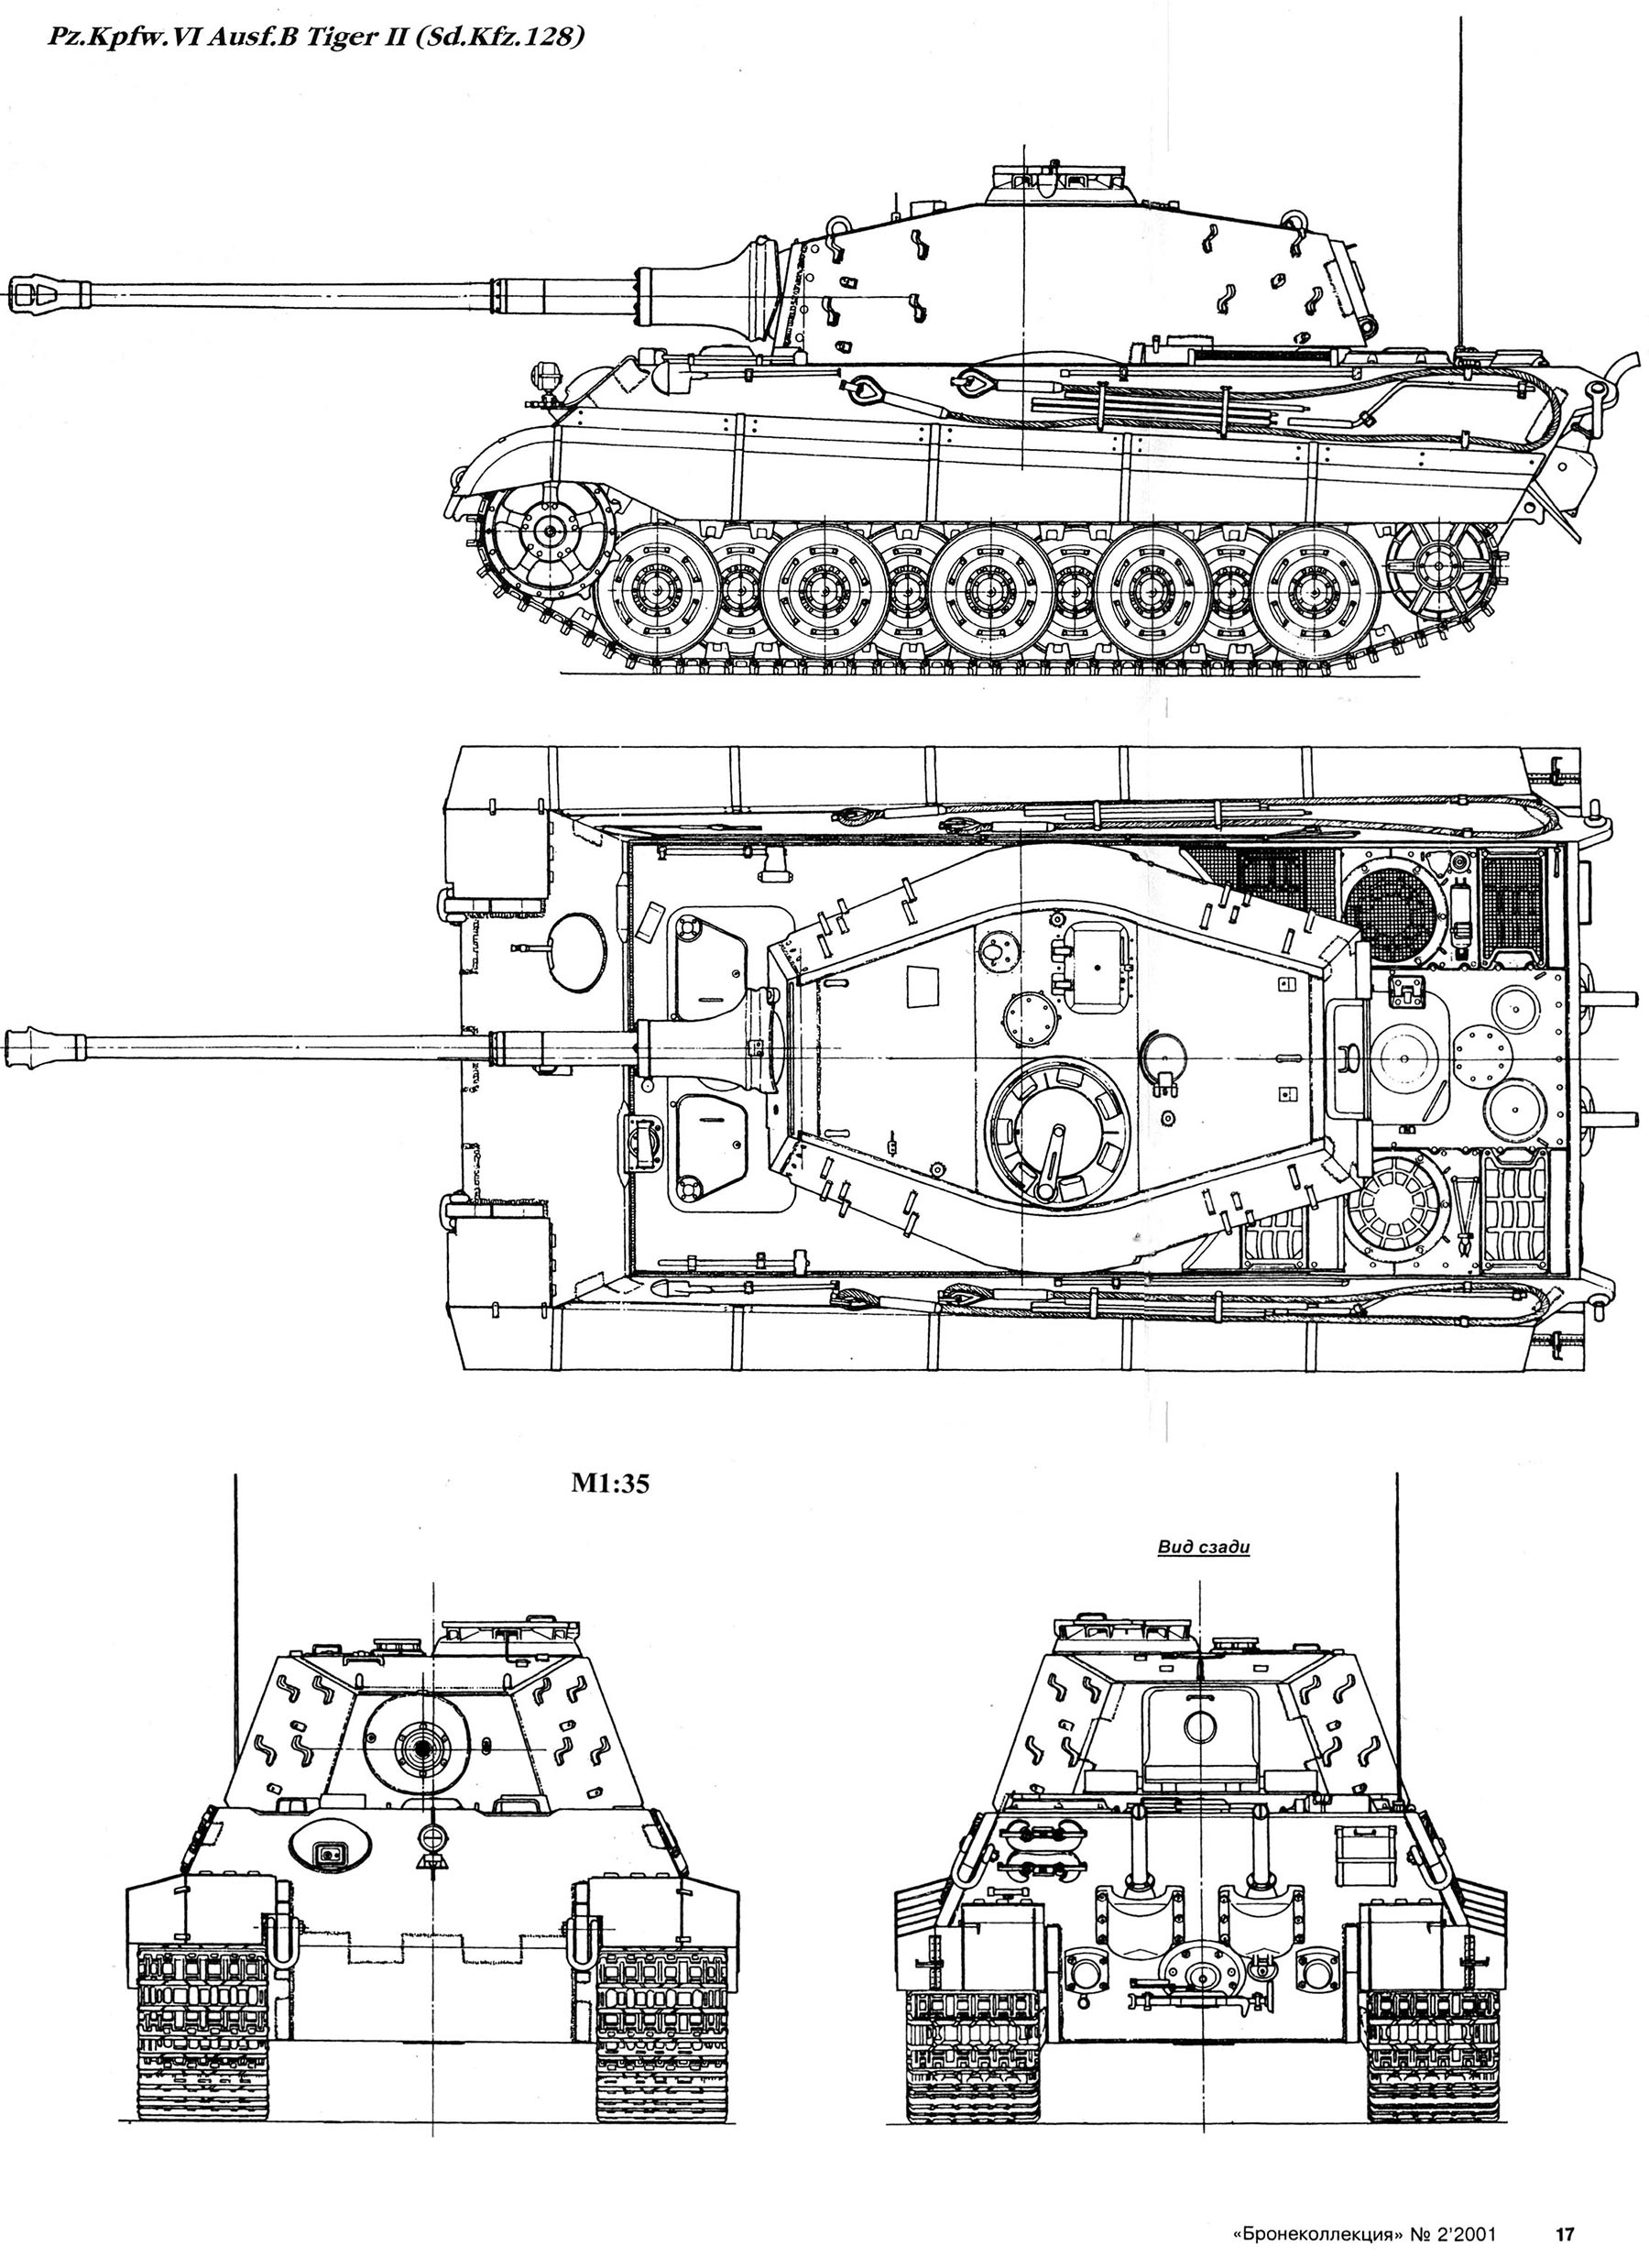 Чертеж танка "Королевский Тигр II" (бронеколлекция)